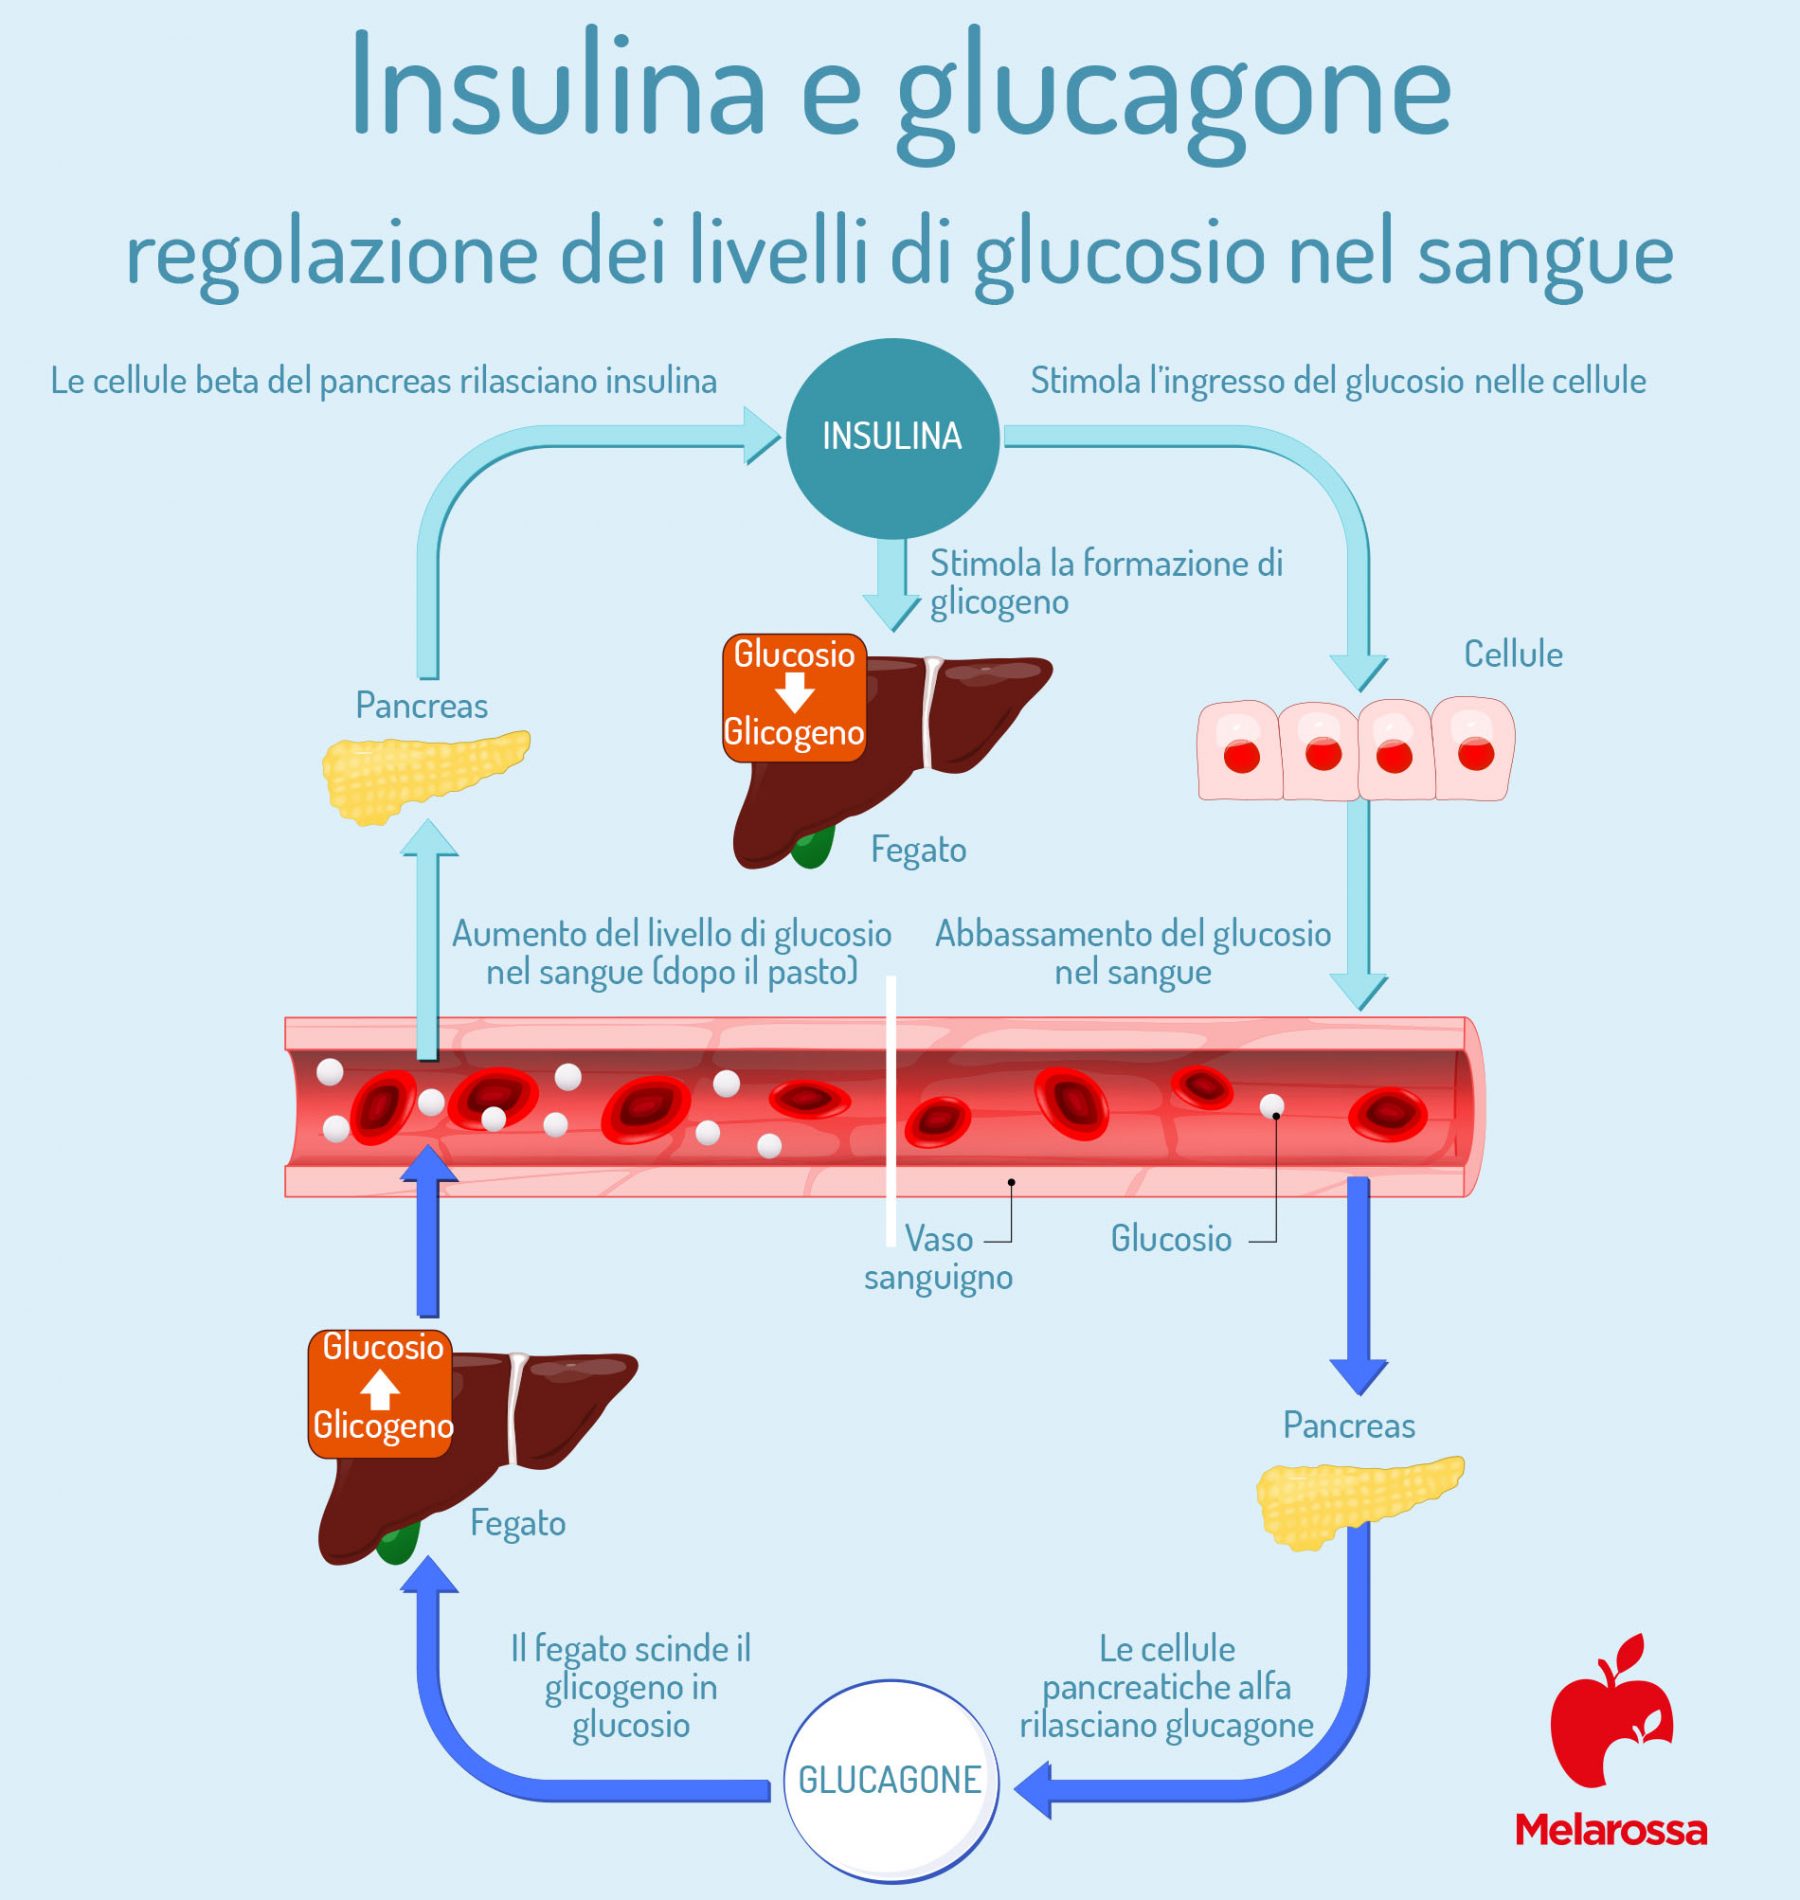 glucagone: regolazione dei livelli di glucosio nel sangue